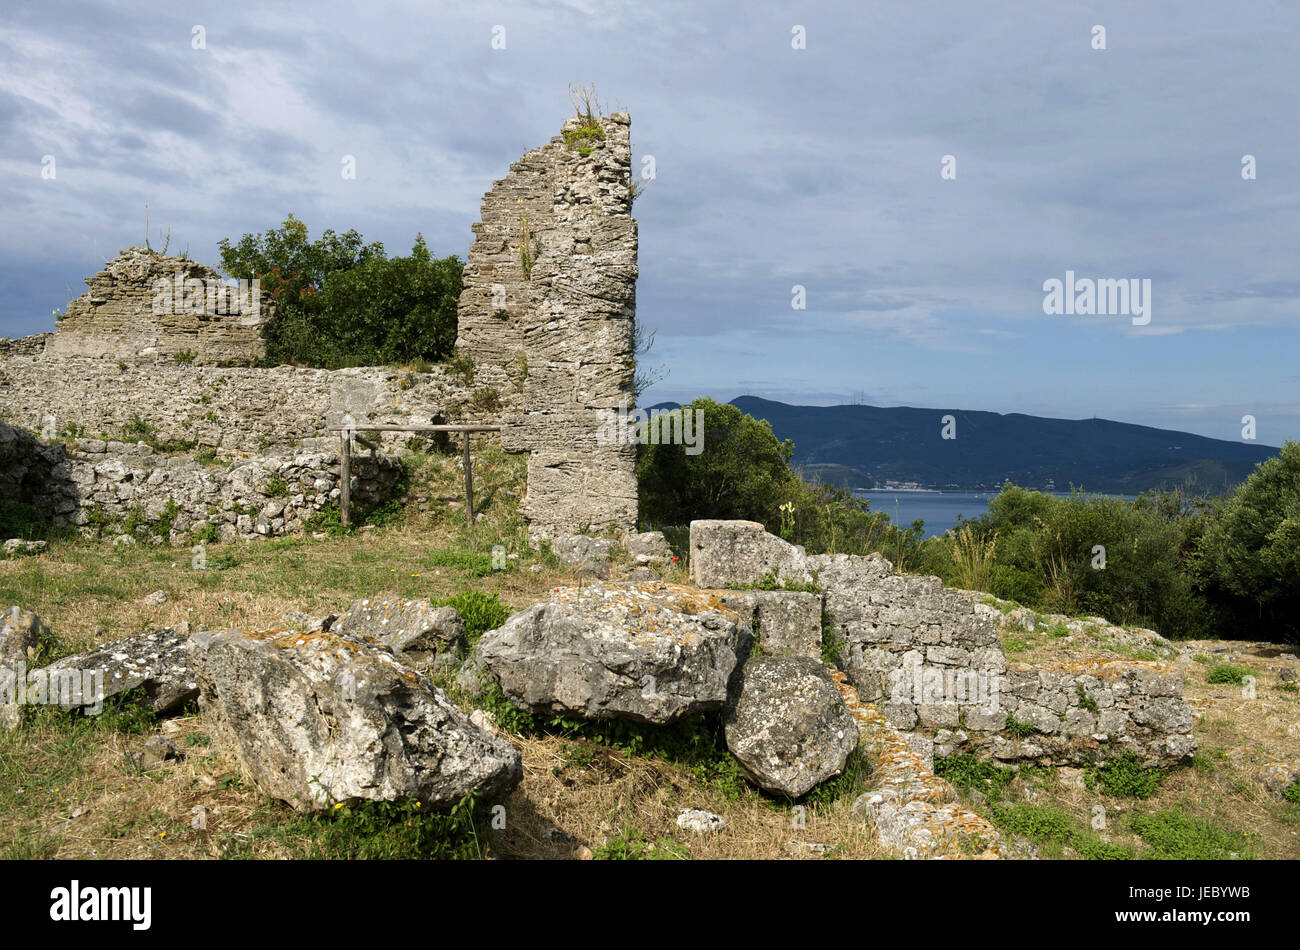 Italy, Tuscany, La Maremma, Ansedonia, Cosa, ruin, decayed defensive wall, Stock Photo